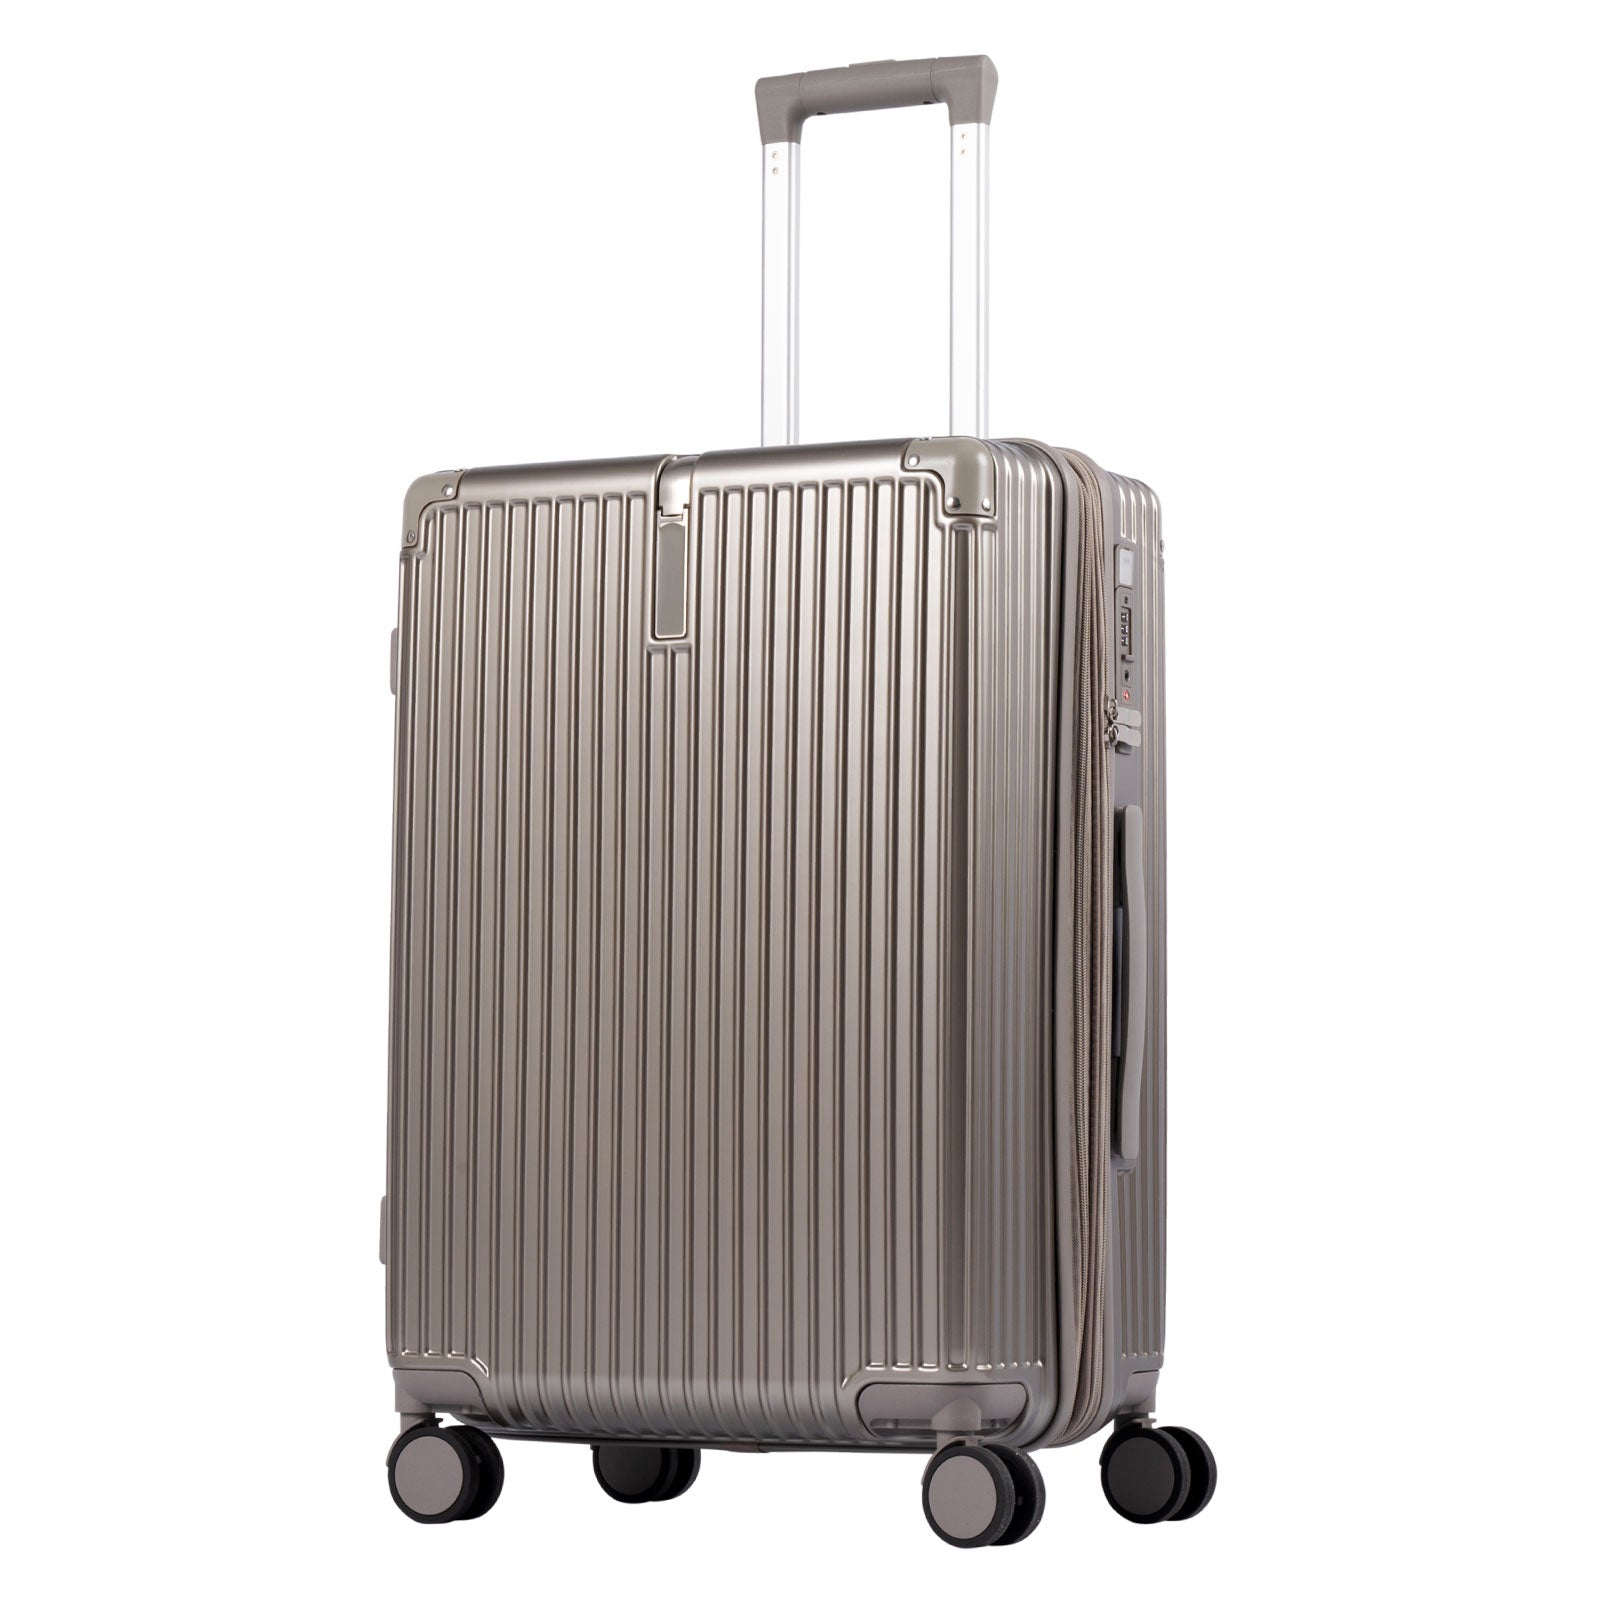 スーツケース キャリーケース Lサイズ 100L キャリーバッグ 4カラー選ぶ 4-7日用 泊まる 軽量設計 360度回転 大容量 ファスナー式 ビジネス 修学旅行 海外旅行 国内旅行 小型 出張 sc116-28